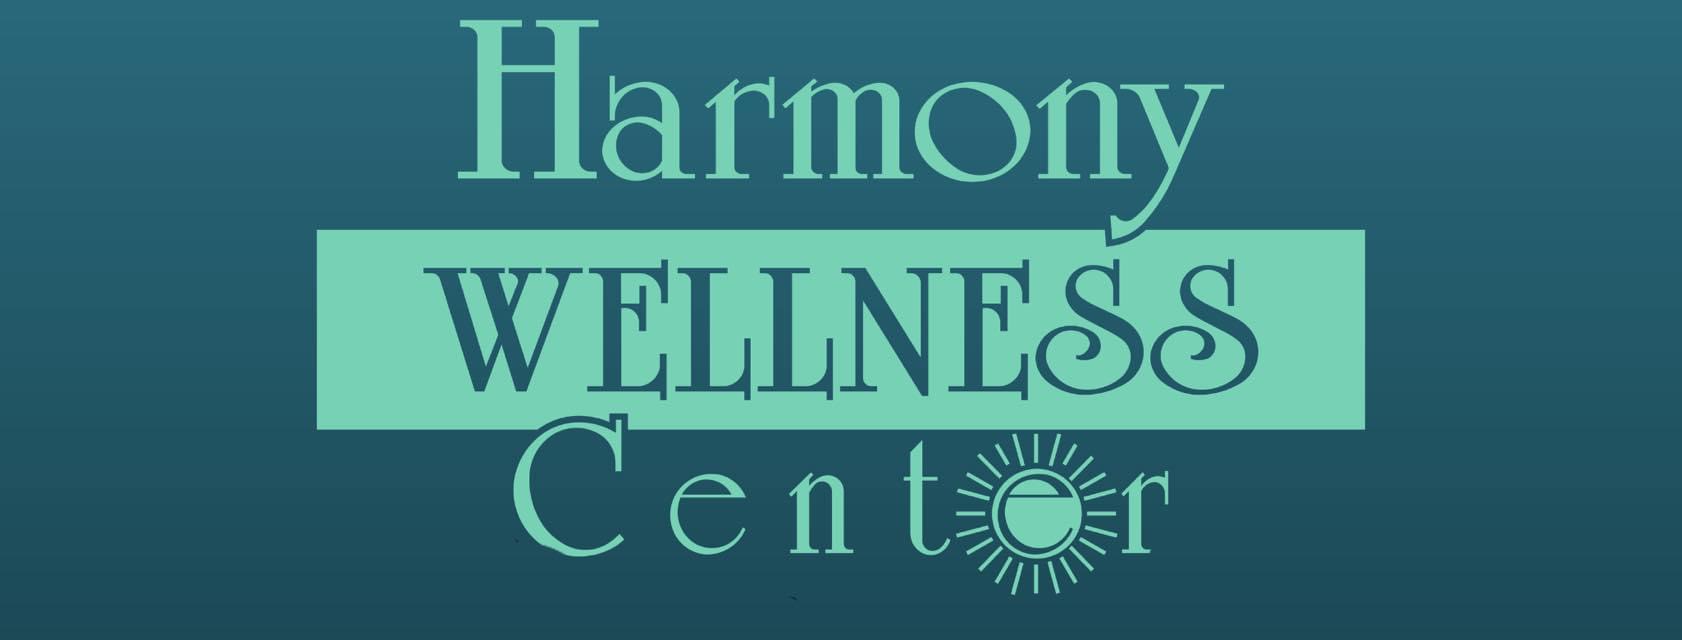 Harmony Wellness Center 732 East Memorial Hwy, Harmony North Carolina 28634